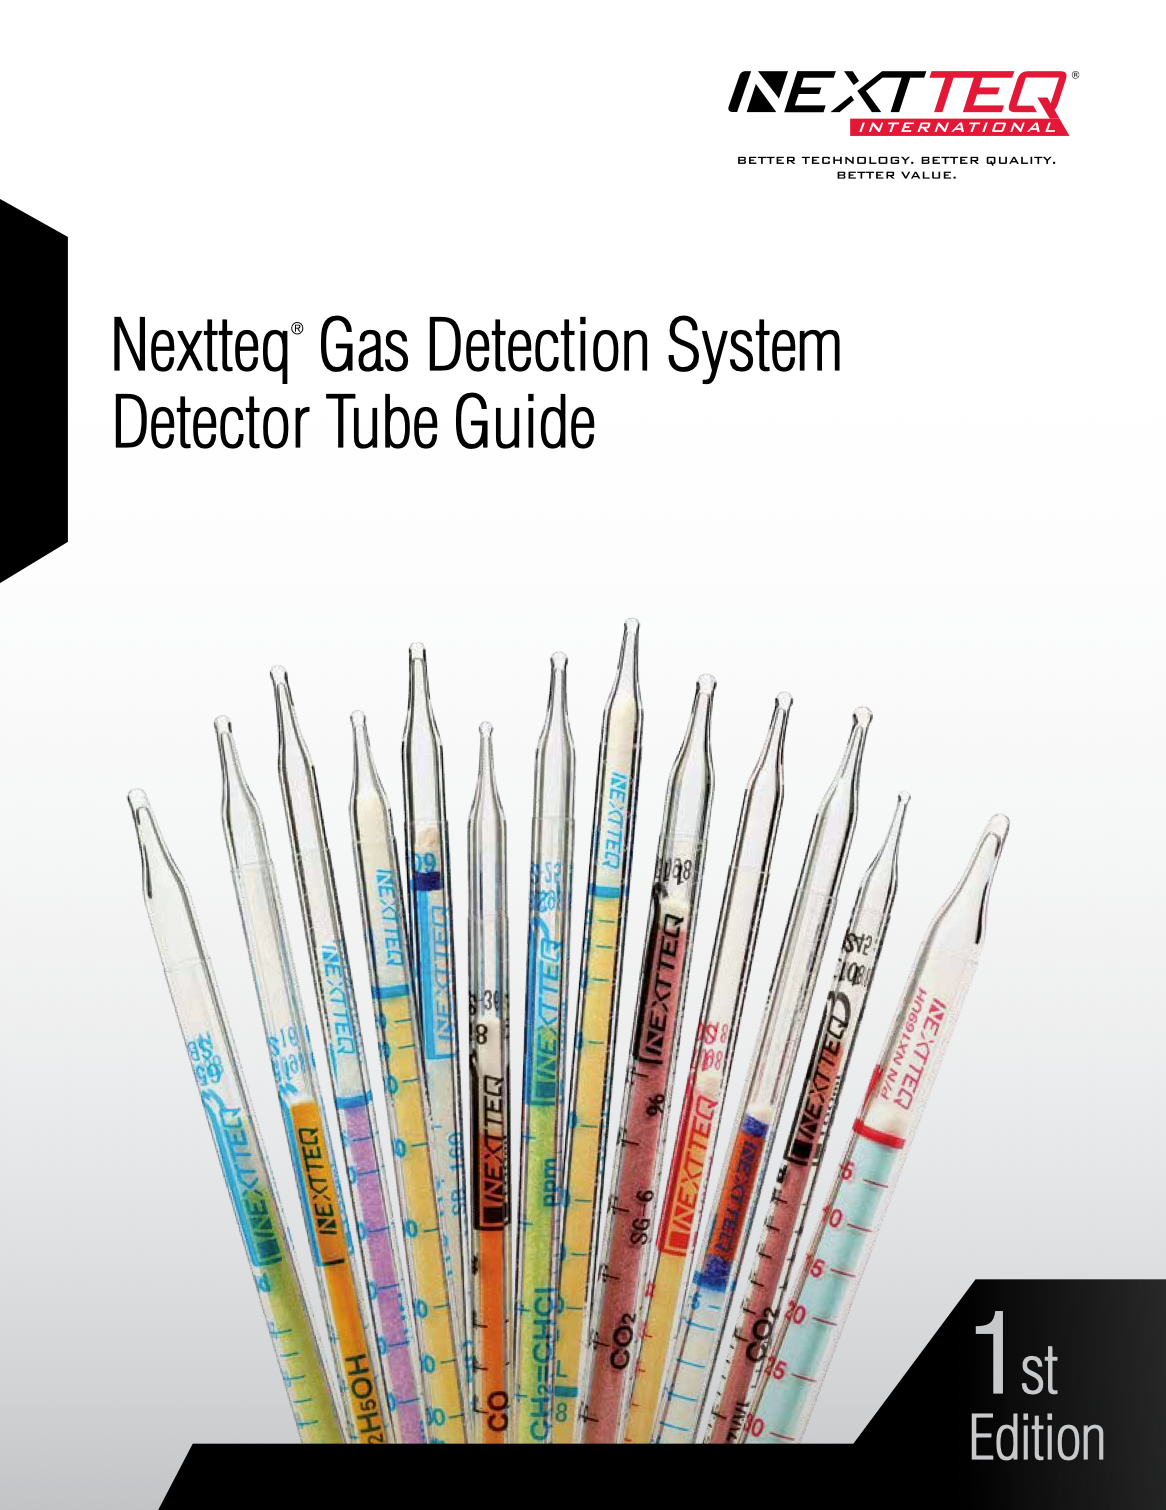 Nextteq Detector Tube Guide